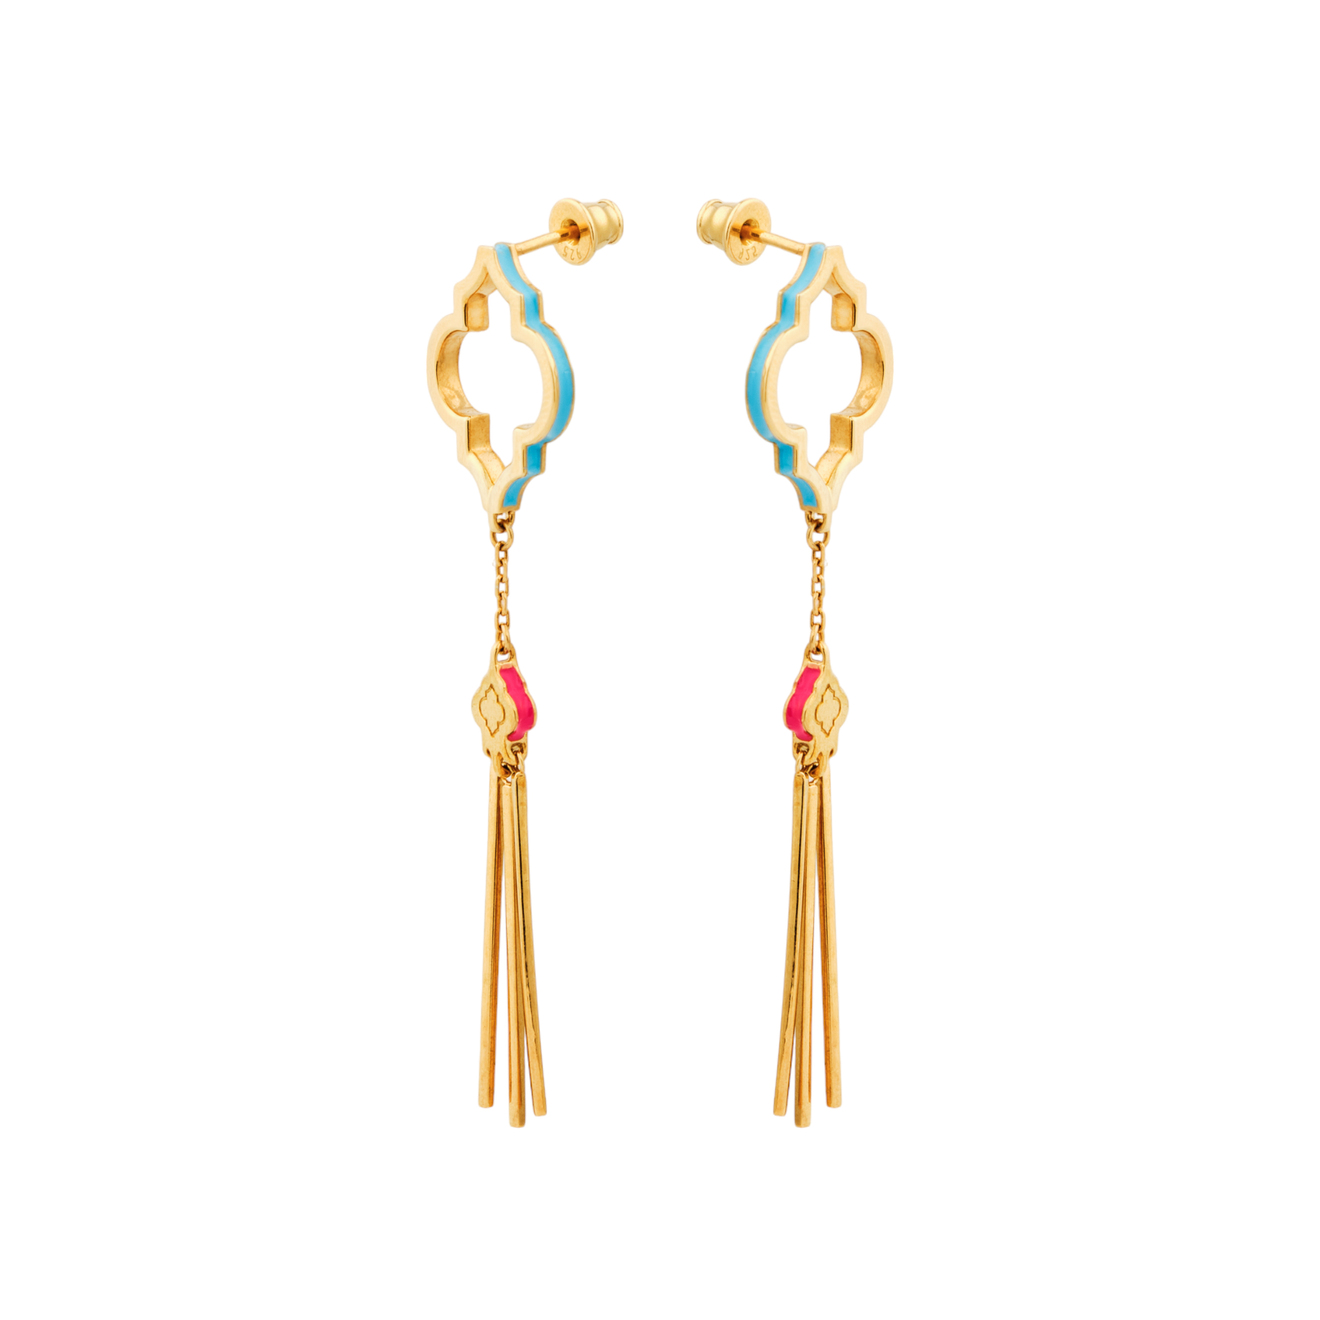 LUTA Jewelry Позолоченные серьги Марокко из серебра с бирюзовой и розовой эмалью luta jewelry серебряные асимметричные позолоченные серьги марокко